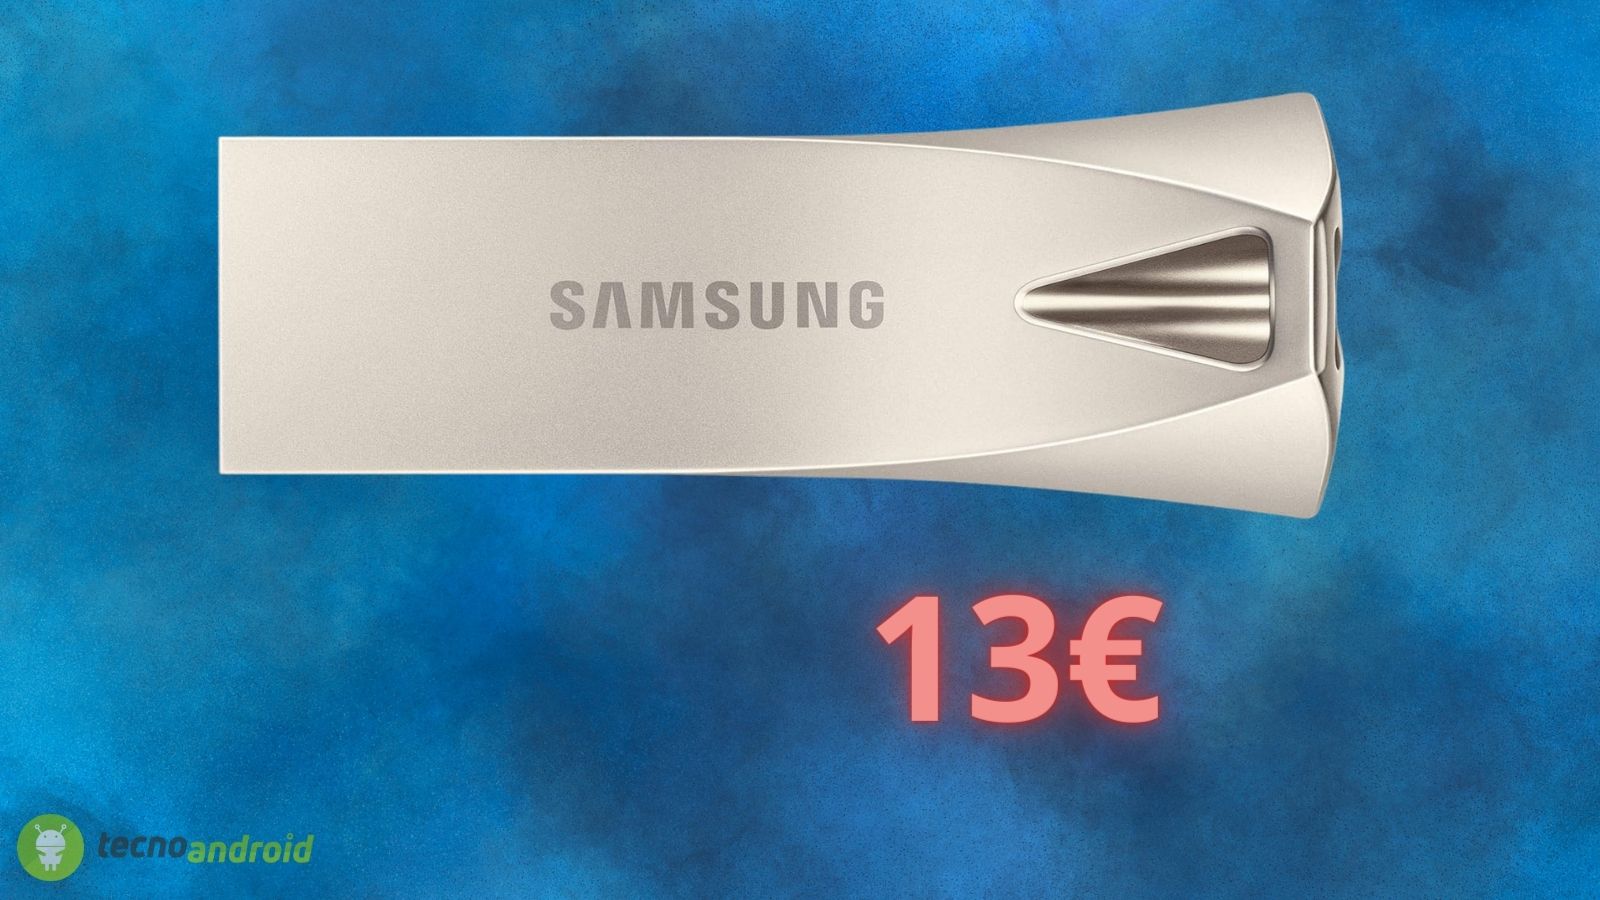 Samsung FOLLE: questo prodotto costa solo 13€ su Amazon